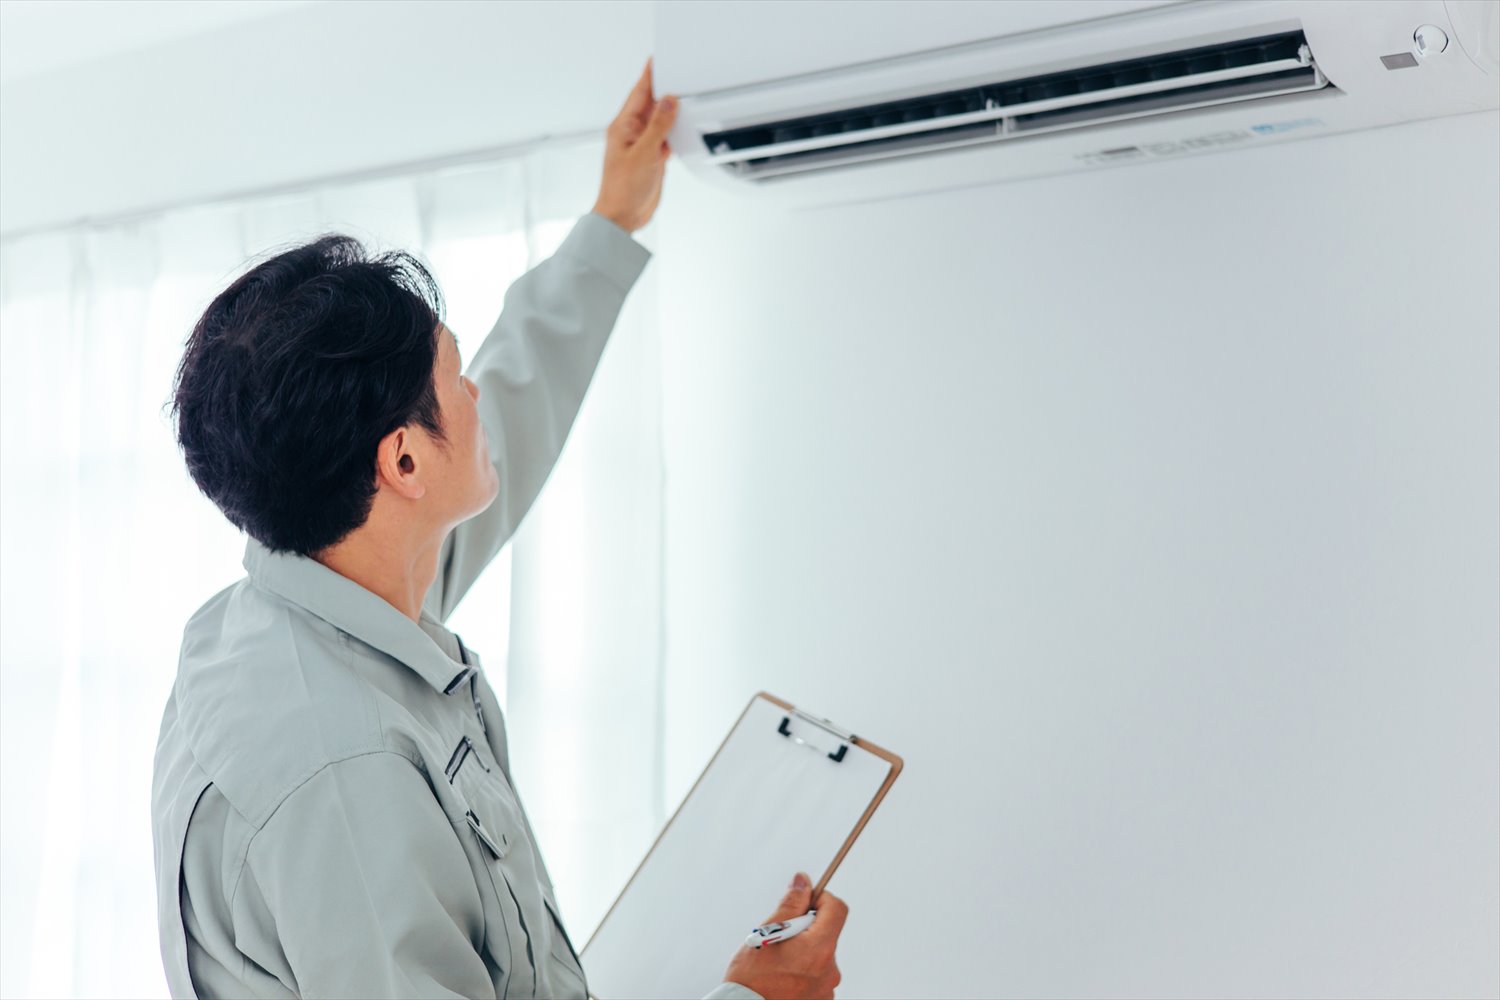 エアコン・空調設備のチェックをする作業着の男性